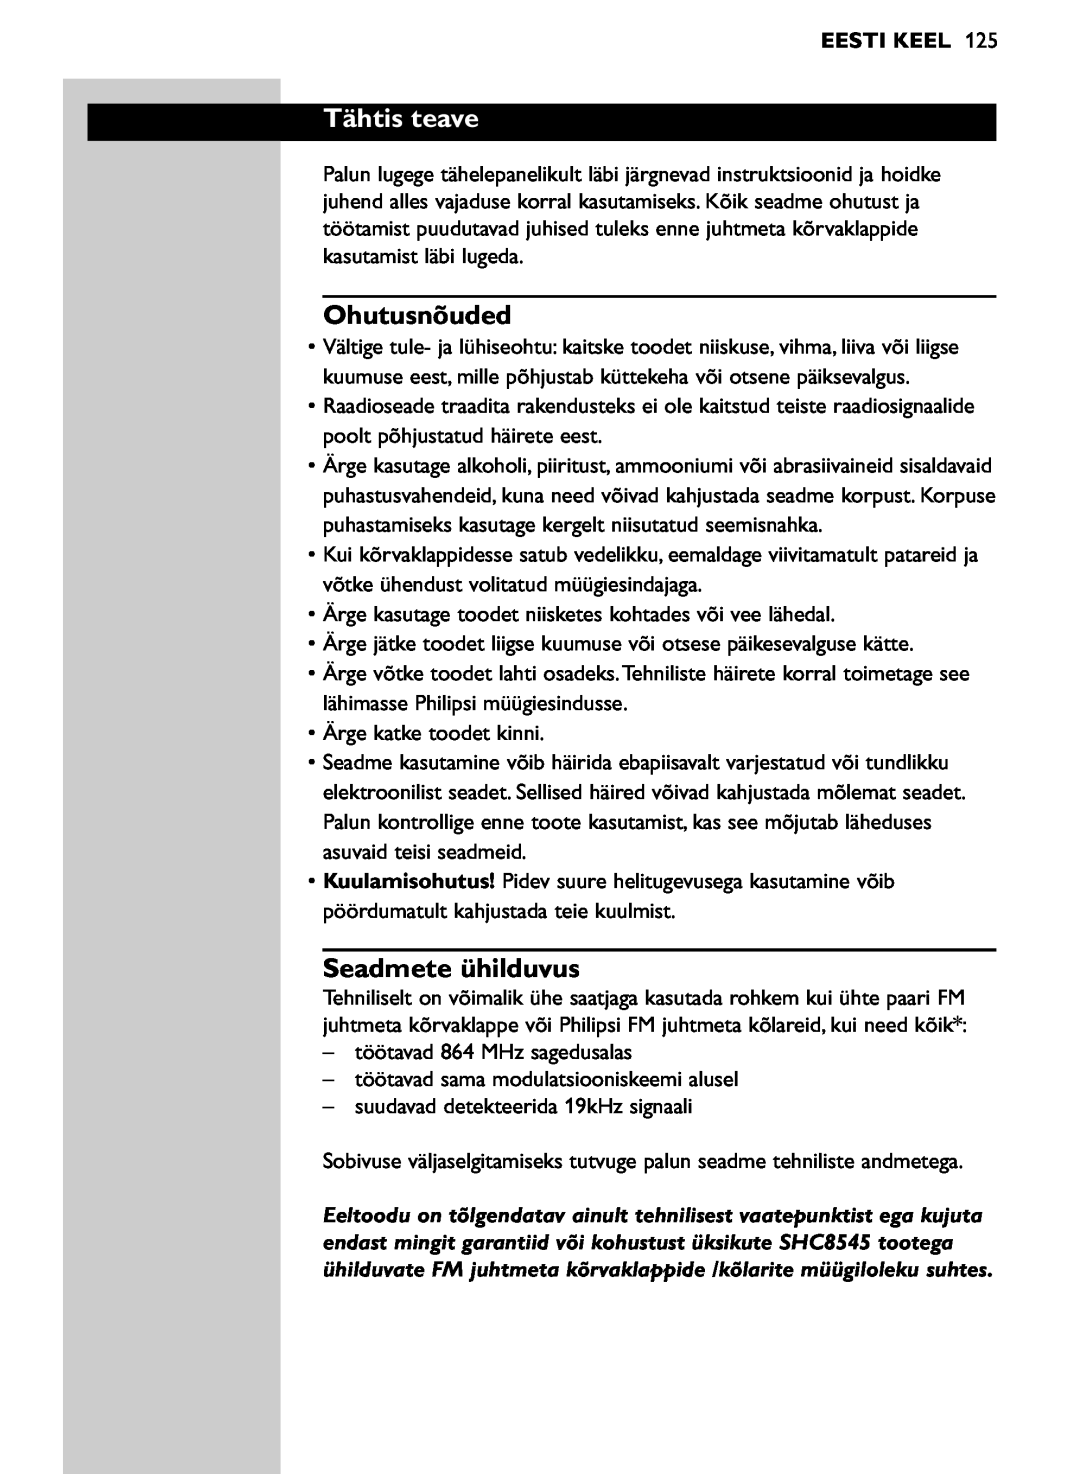 Philips SHC8545/00 manual Tähtis teave, Ohutusnõuded, Seadmete ühilduvus, Eesti Keel 